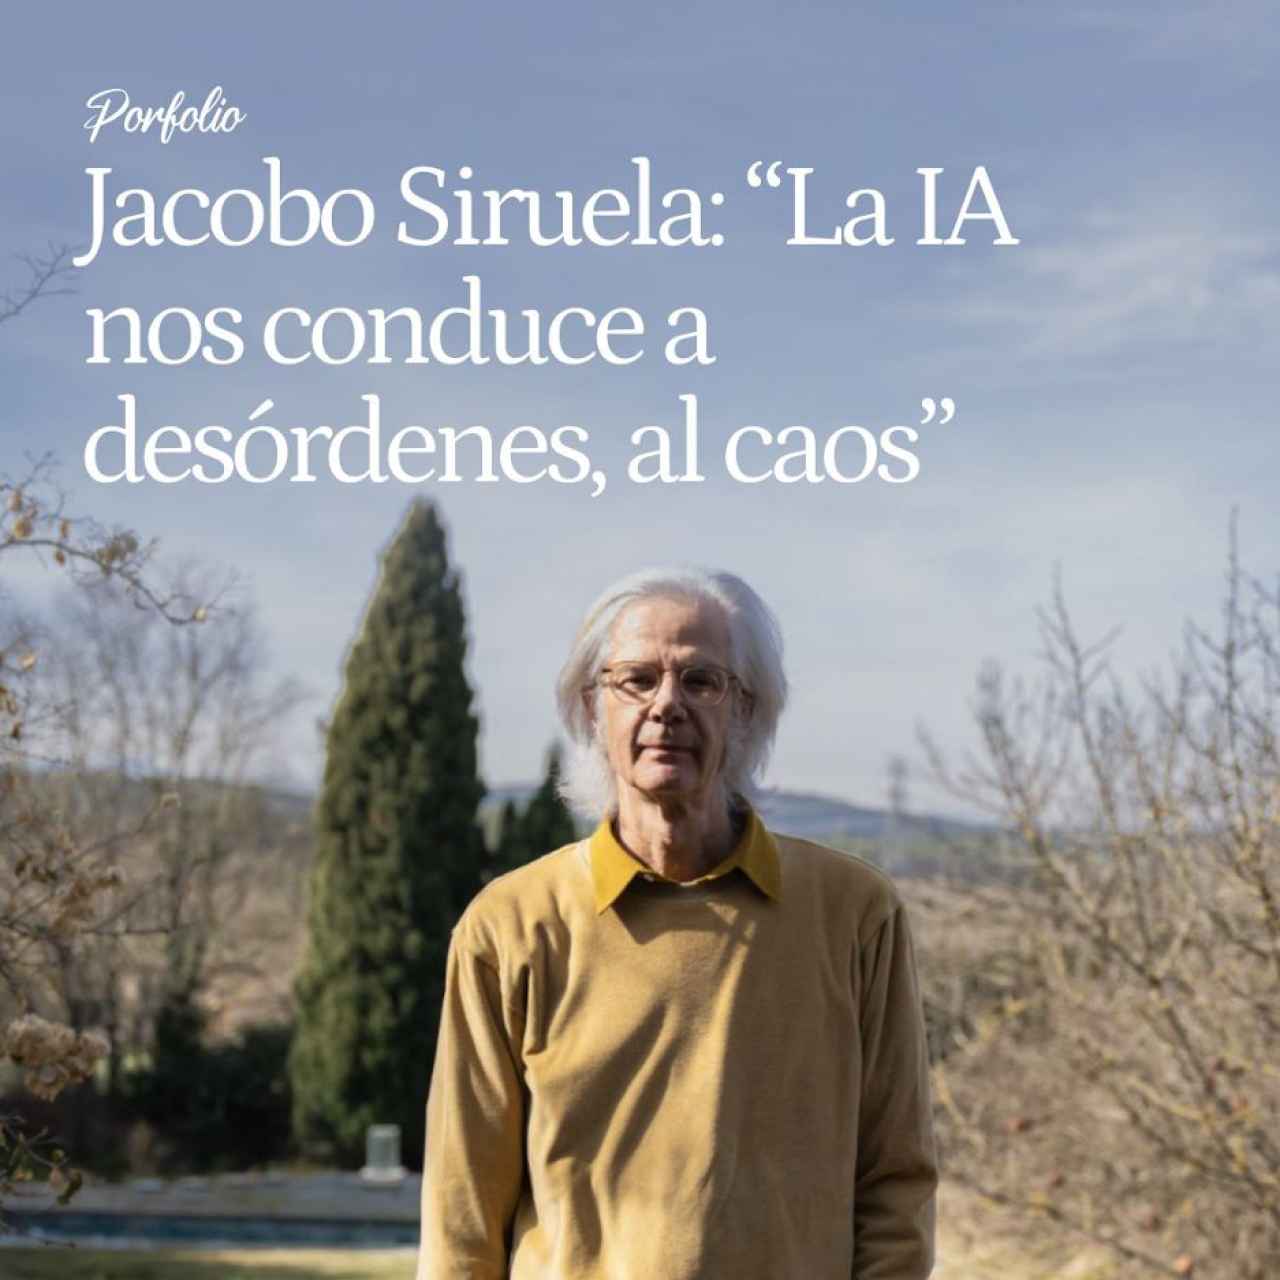 Jacobo Siruela, el editor de sangre azul y místico de la Casa de Alba: "La IA nos conduce a desórdenes sociales y psicológicos, al caos"